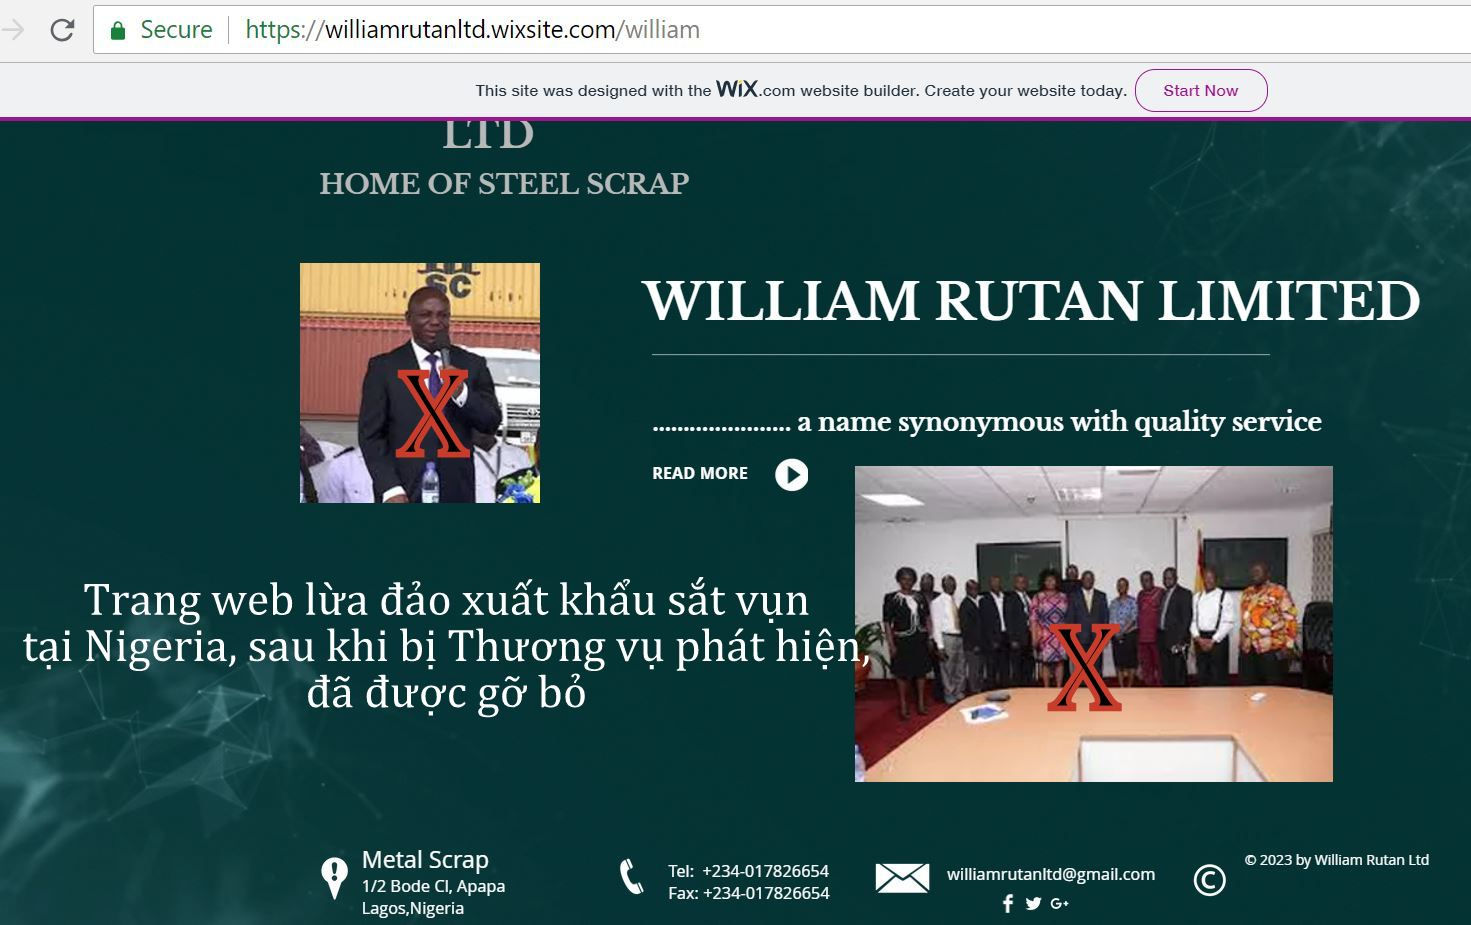 Trang webwww.williamruttanltd.wixsite.com/william lừa đảo xuất khẩu sắt vụn tại Nigeria bị Thương vụ 